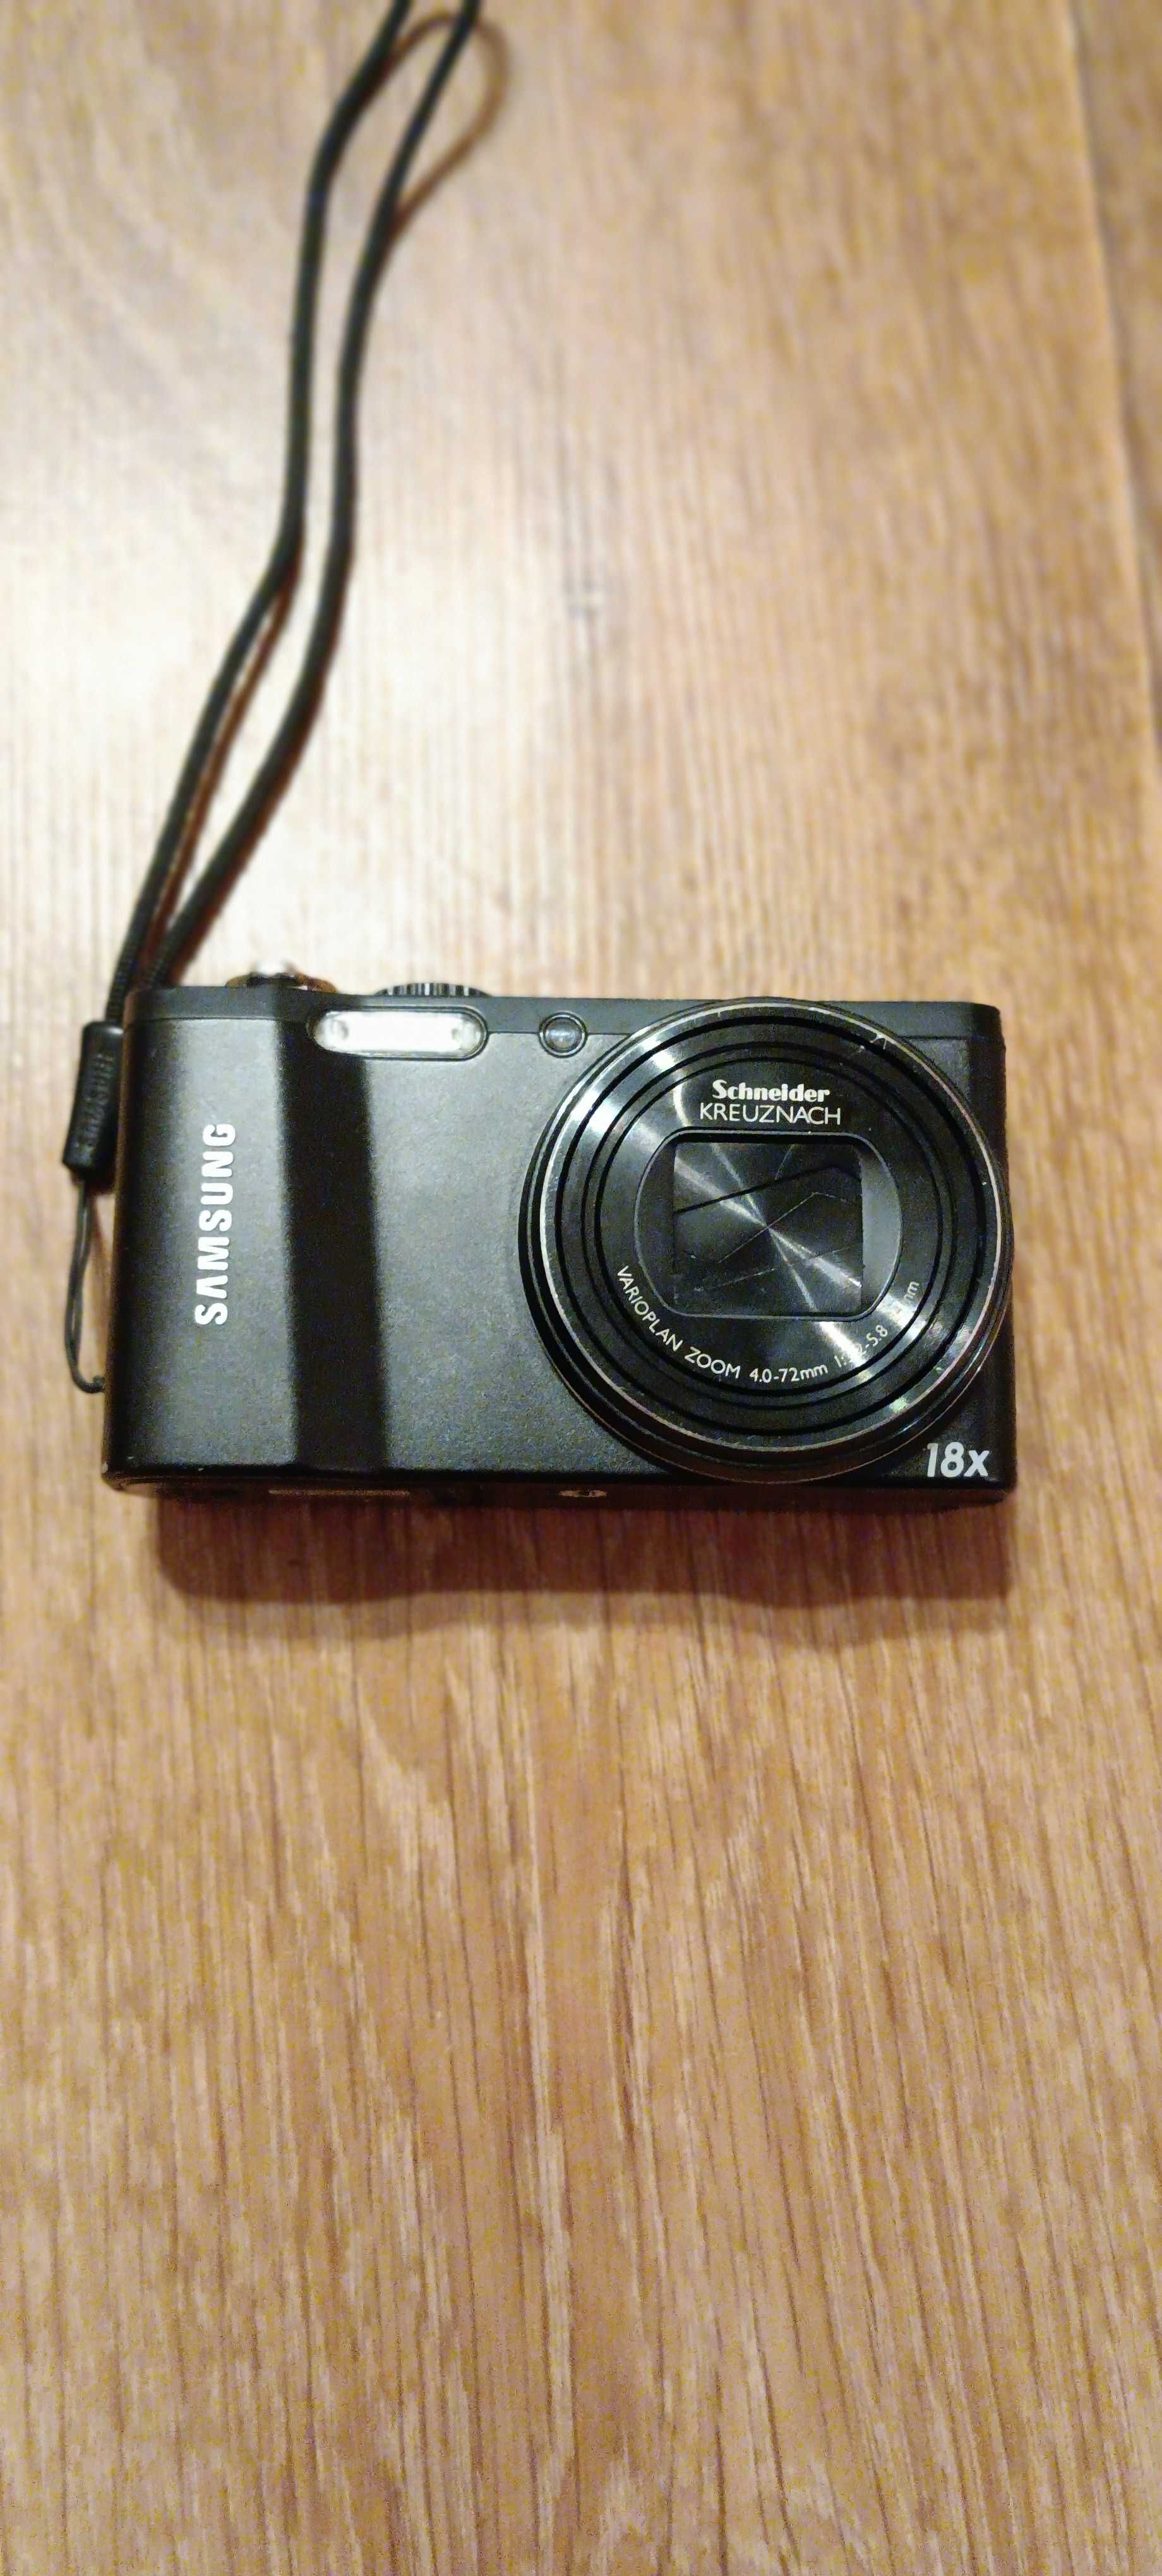 Продам фотоаппарат Samsung WB 700 - Б/У в отличном рабочем состоянии.